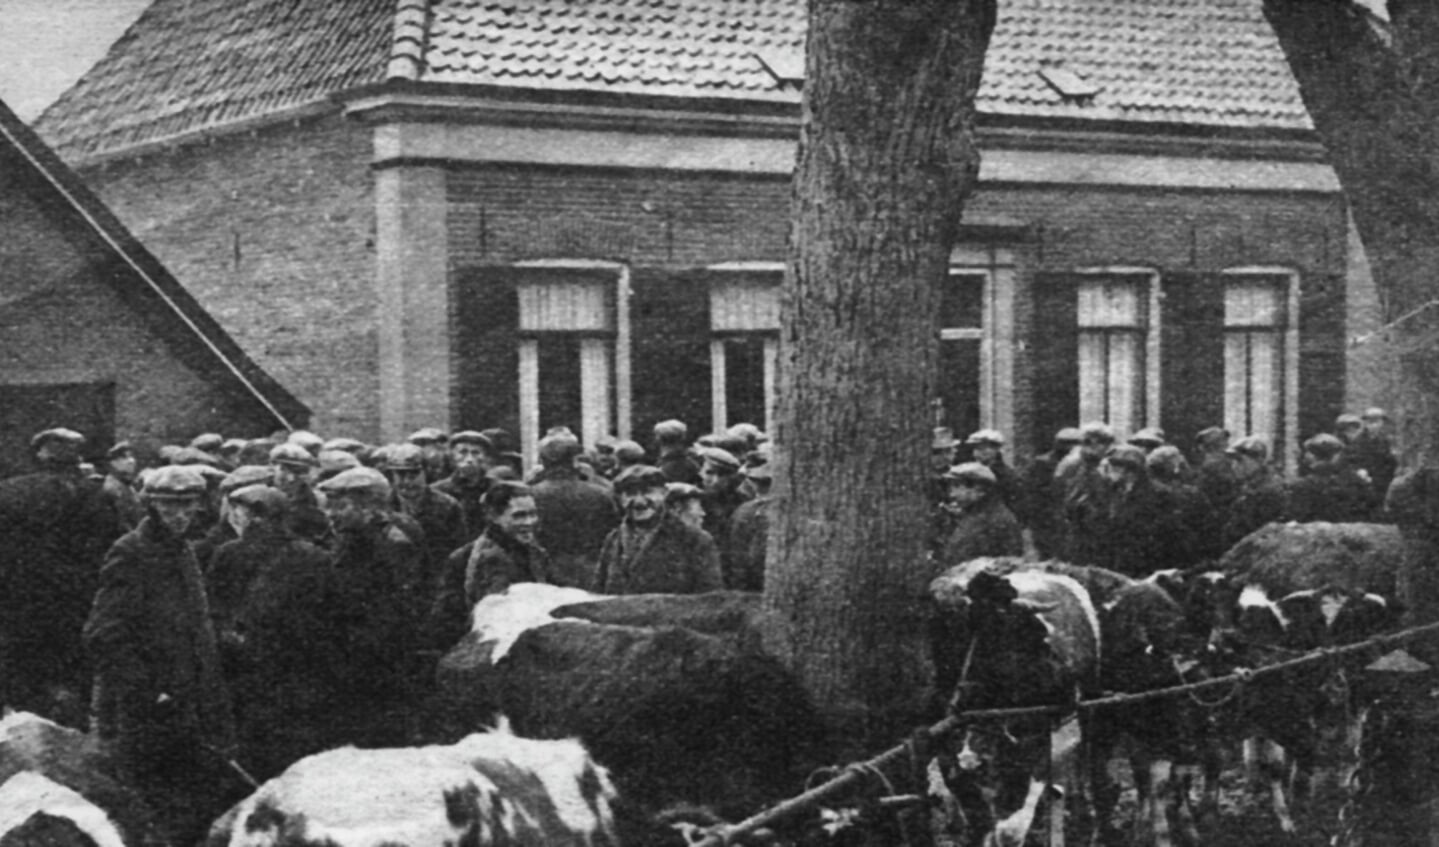 De 'koldemarkt' of novembermarkt in 1935 waar vee verhandeld werd. Hier staan ze aan het koord dat gespannen is door de ringen aan de bomen. Foto: Stichting Oud Zelhem